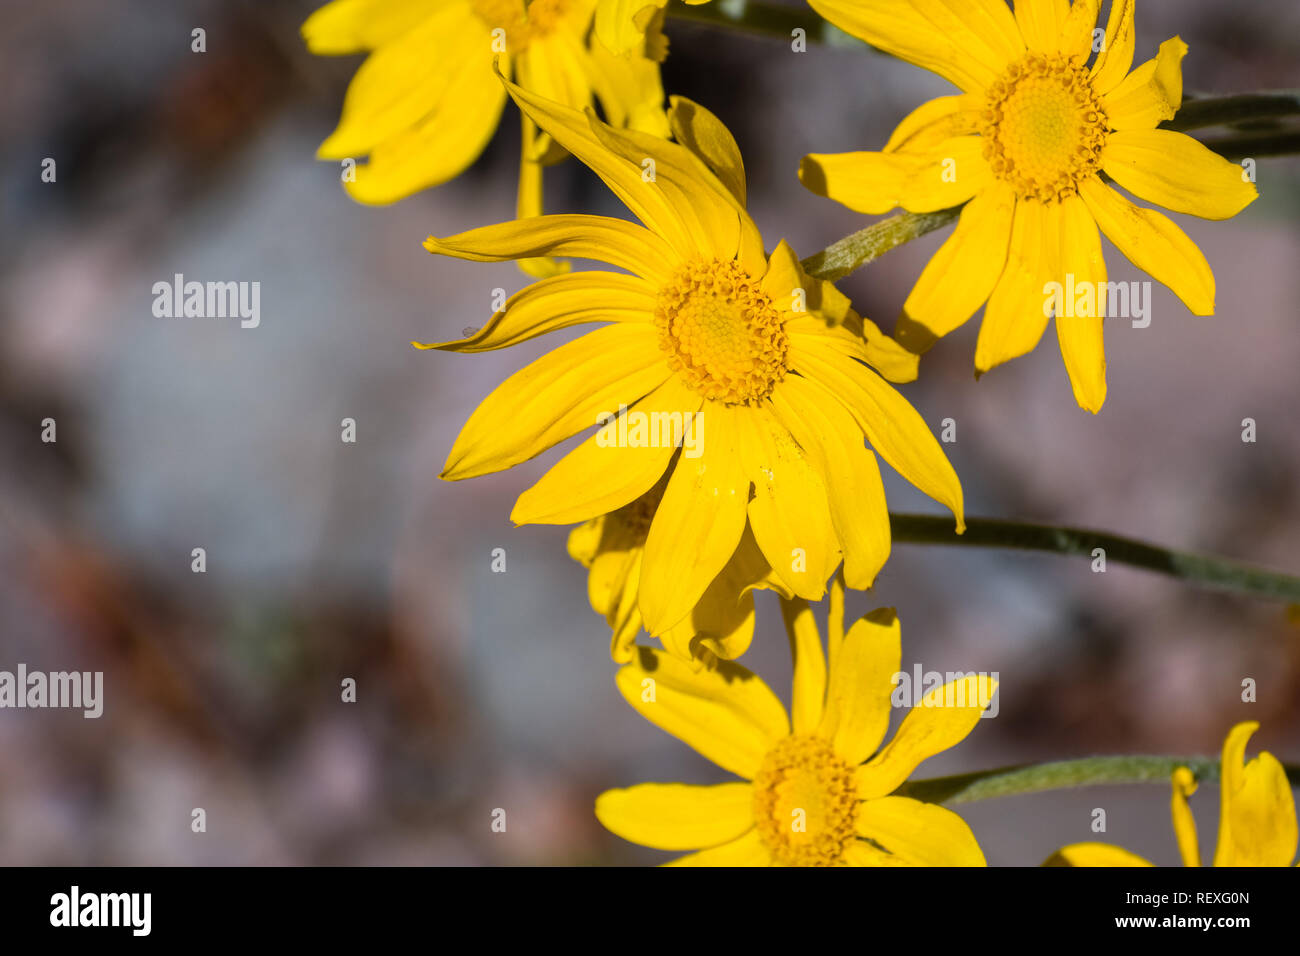 Common woolly sunflower (Eriophyllum lanatum) wildflowers blooming in Siskiyou County, California Stock Photo